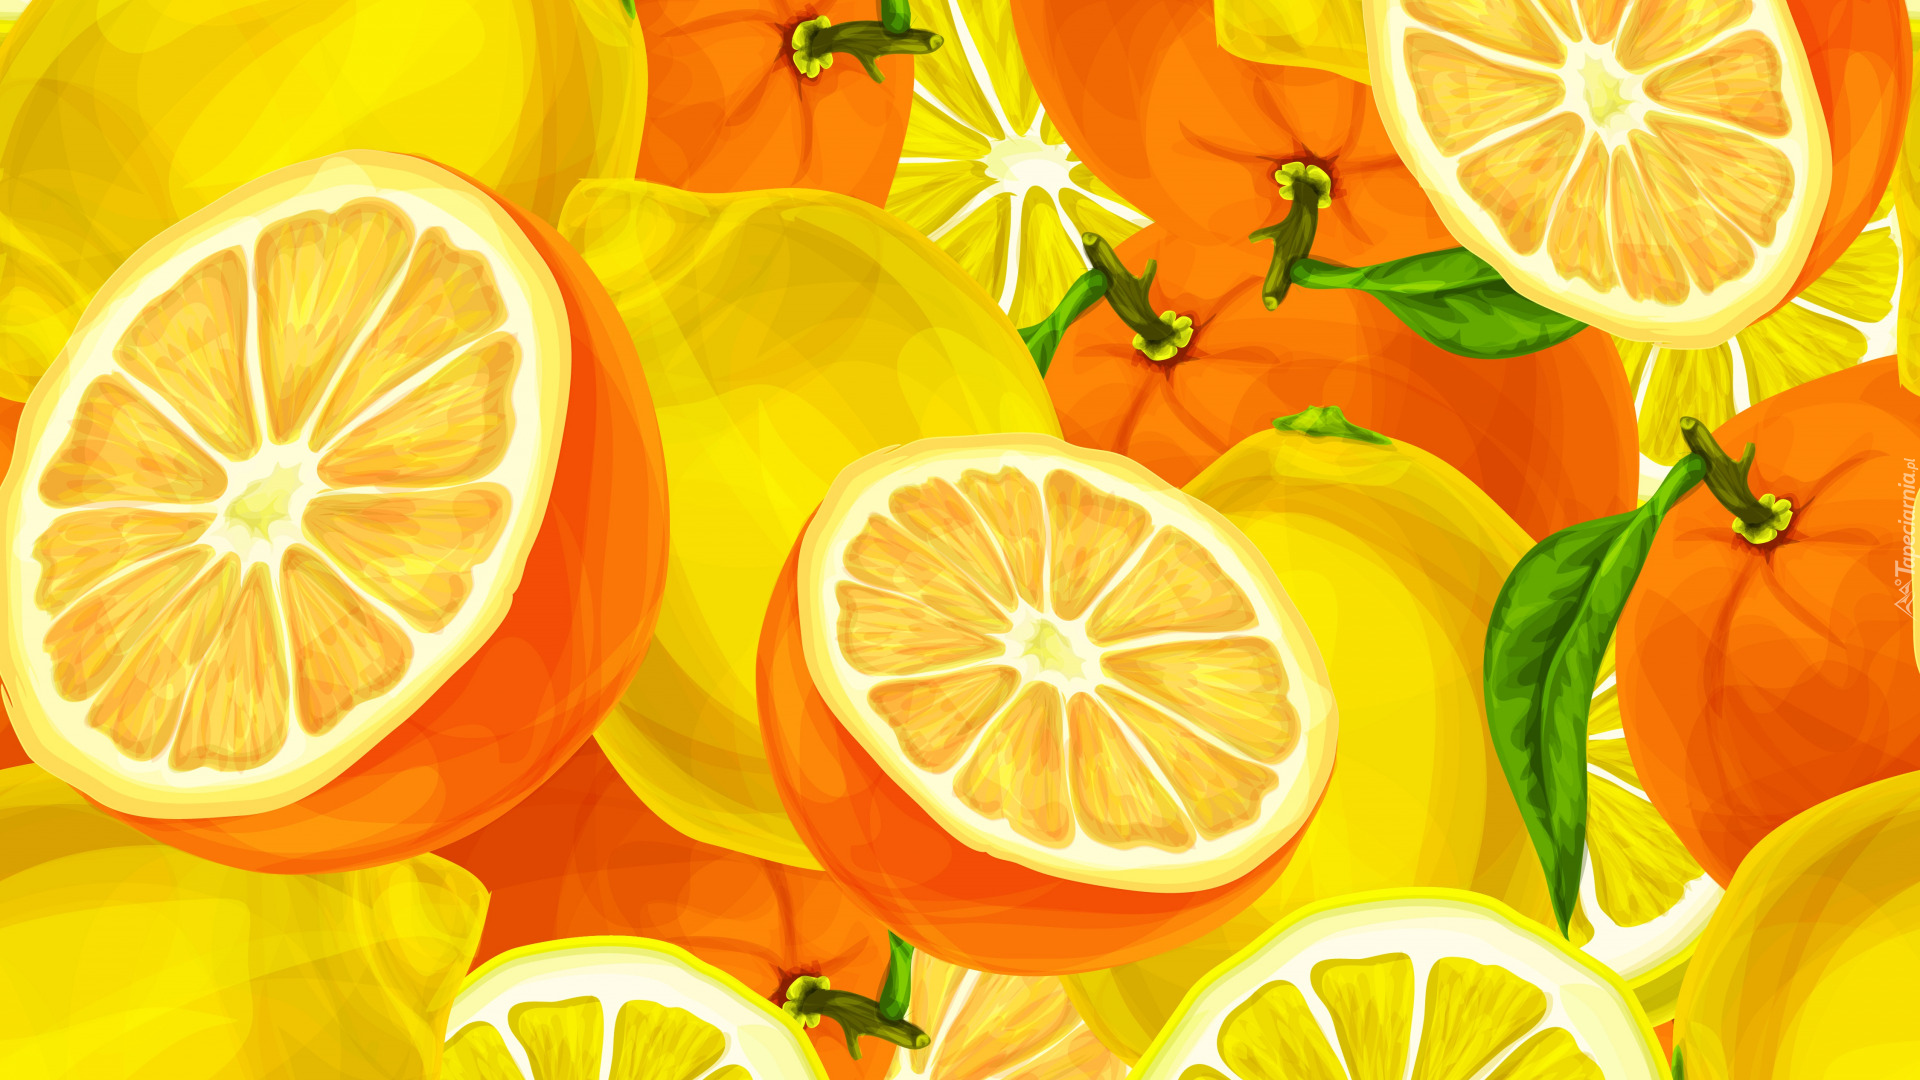 Owoce, Cytrusy, Pomarańcze, Cytryny, 2D